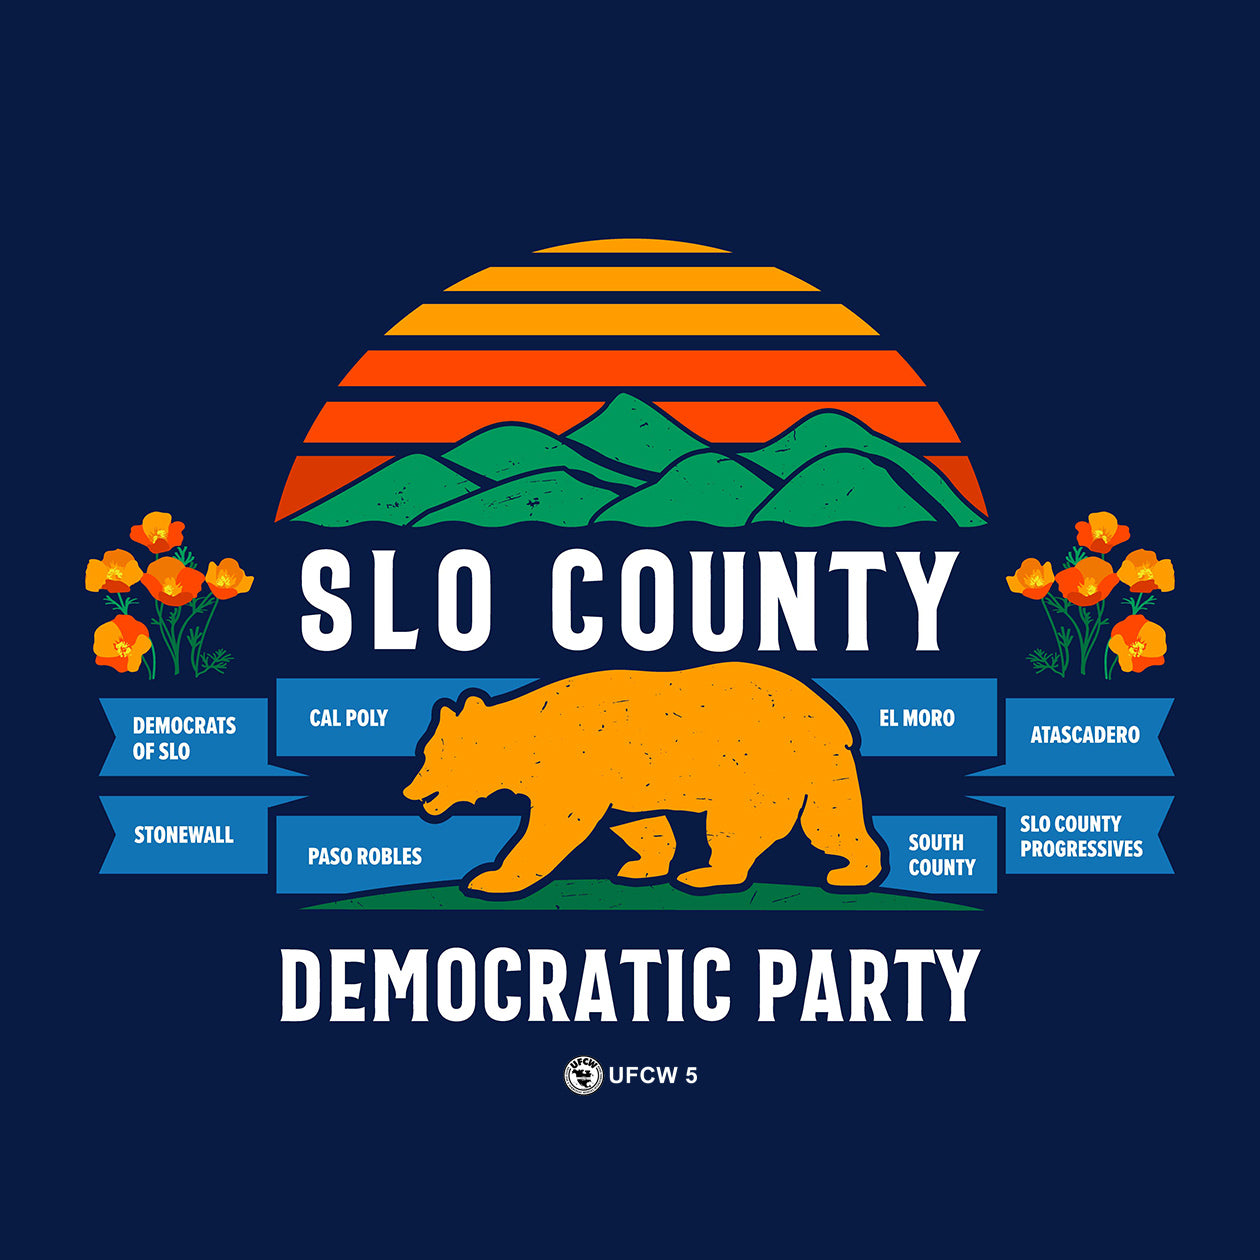 SLO County Democrats